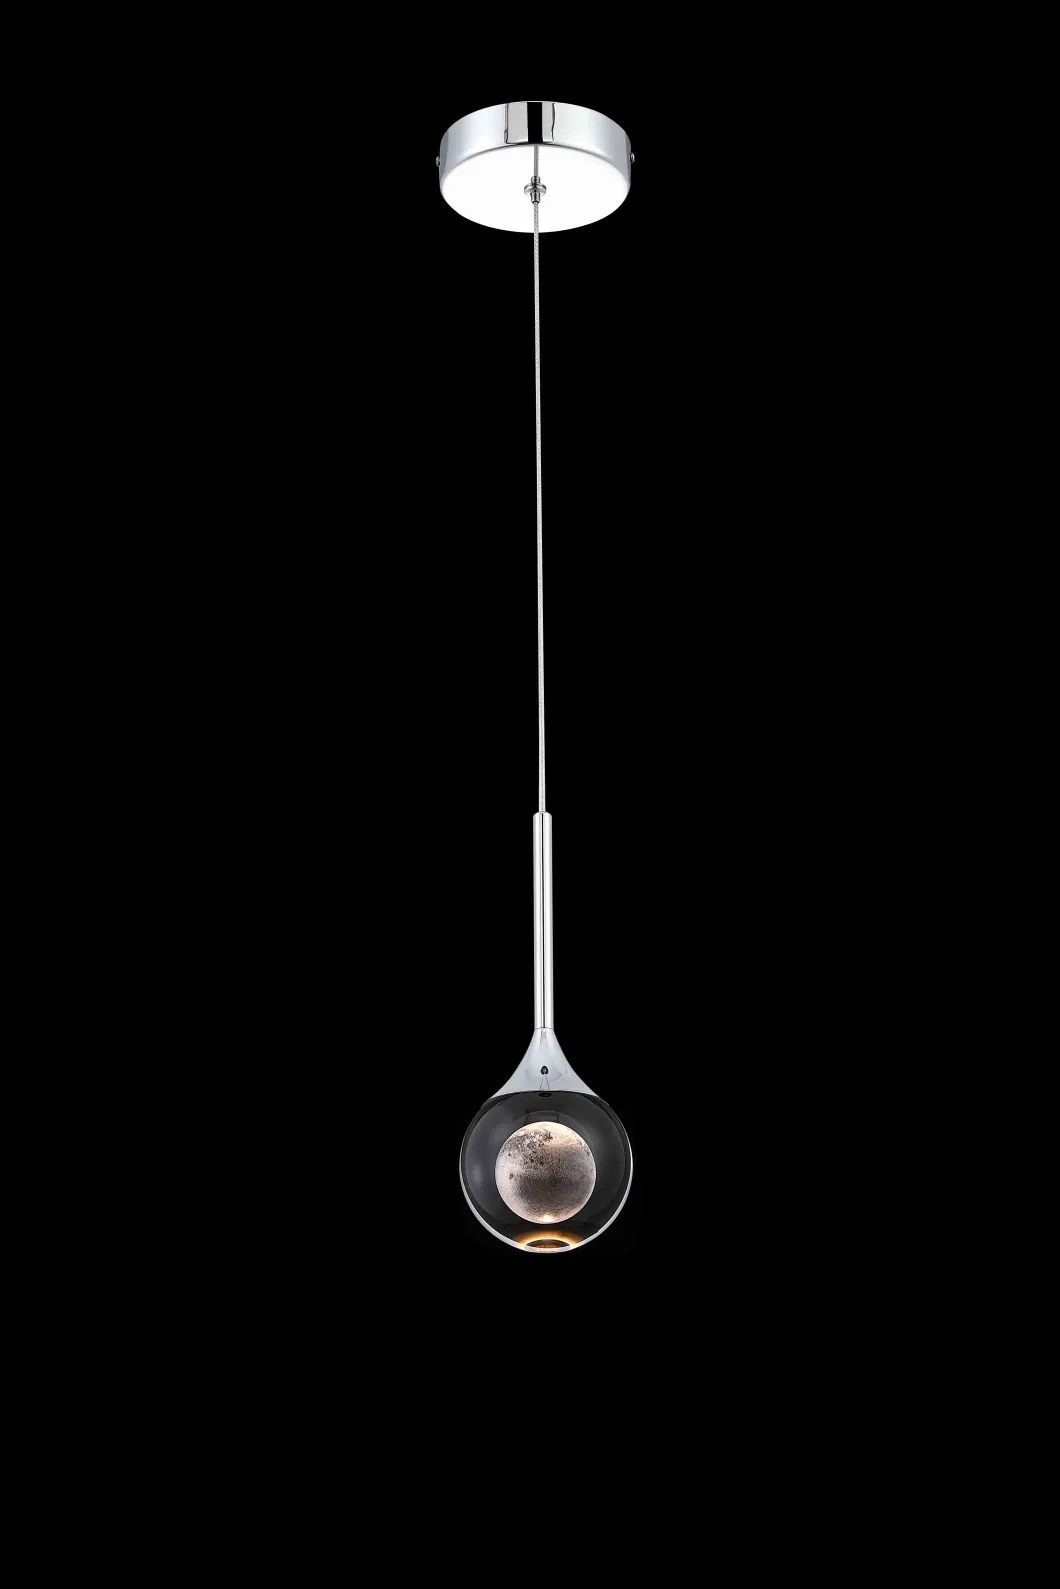 Masivel Factory Modern Lighting Luxury Crystal Chandelier Light LED Pendant Lamp